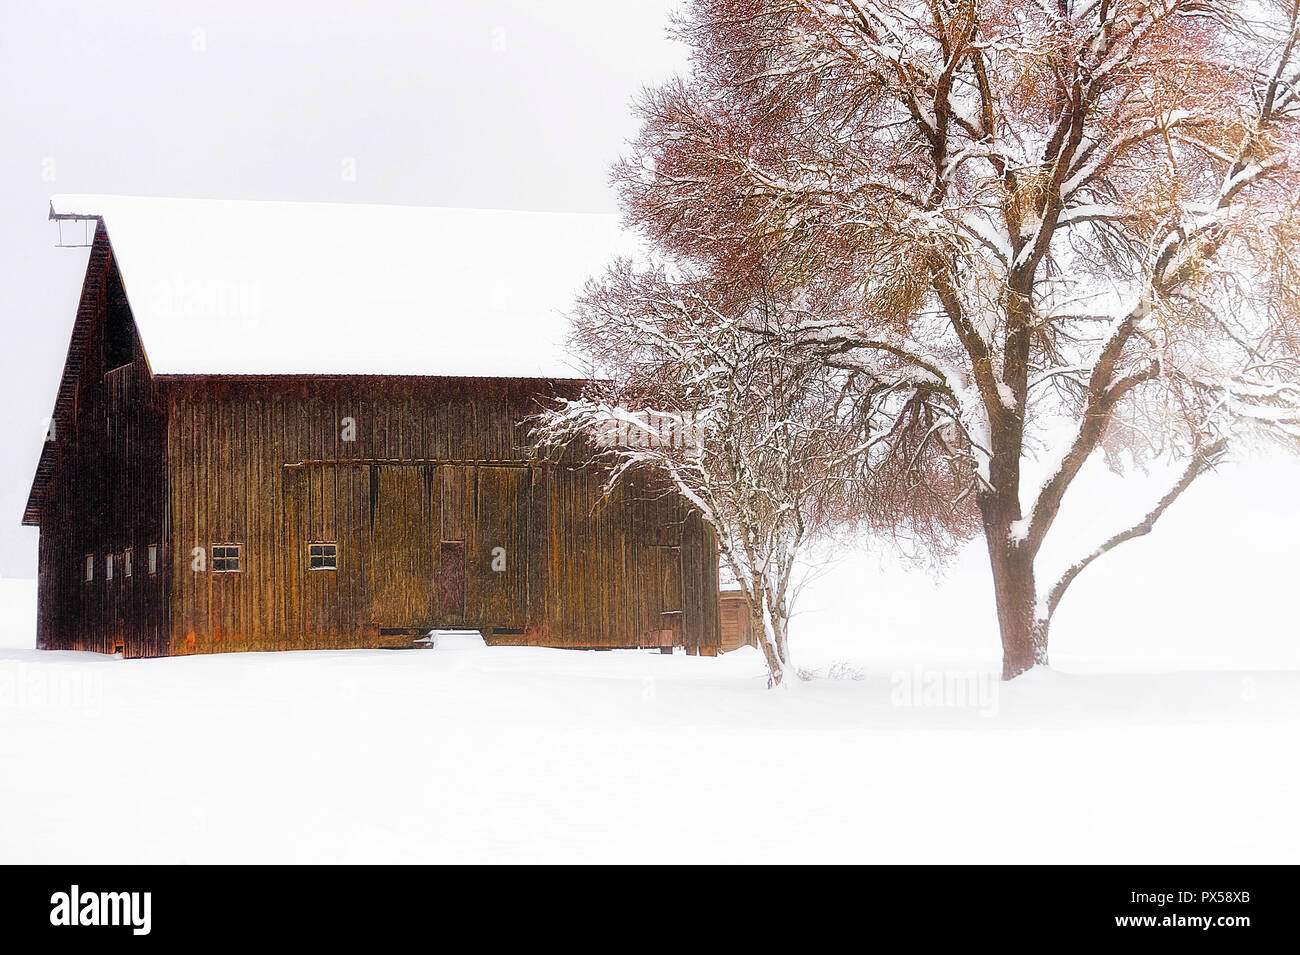 La nieve cae en este país encantador establecimiento de un granero y un columpio de neumático atado a un árbol. Foto de stock